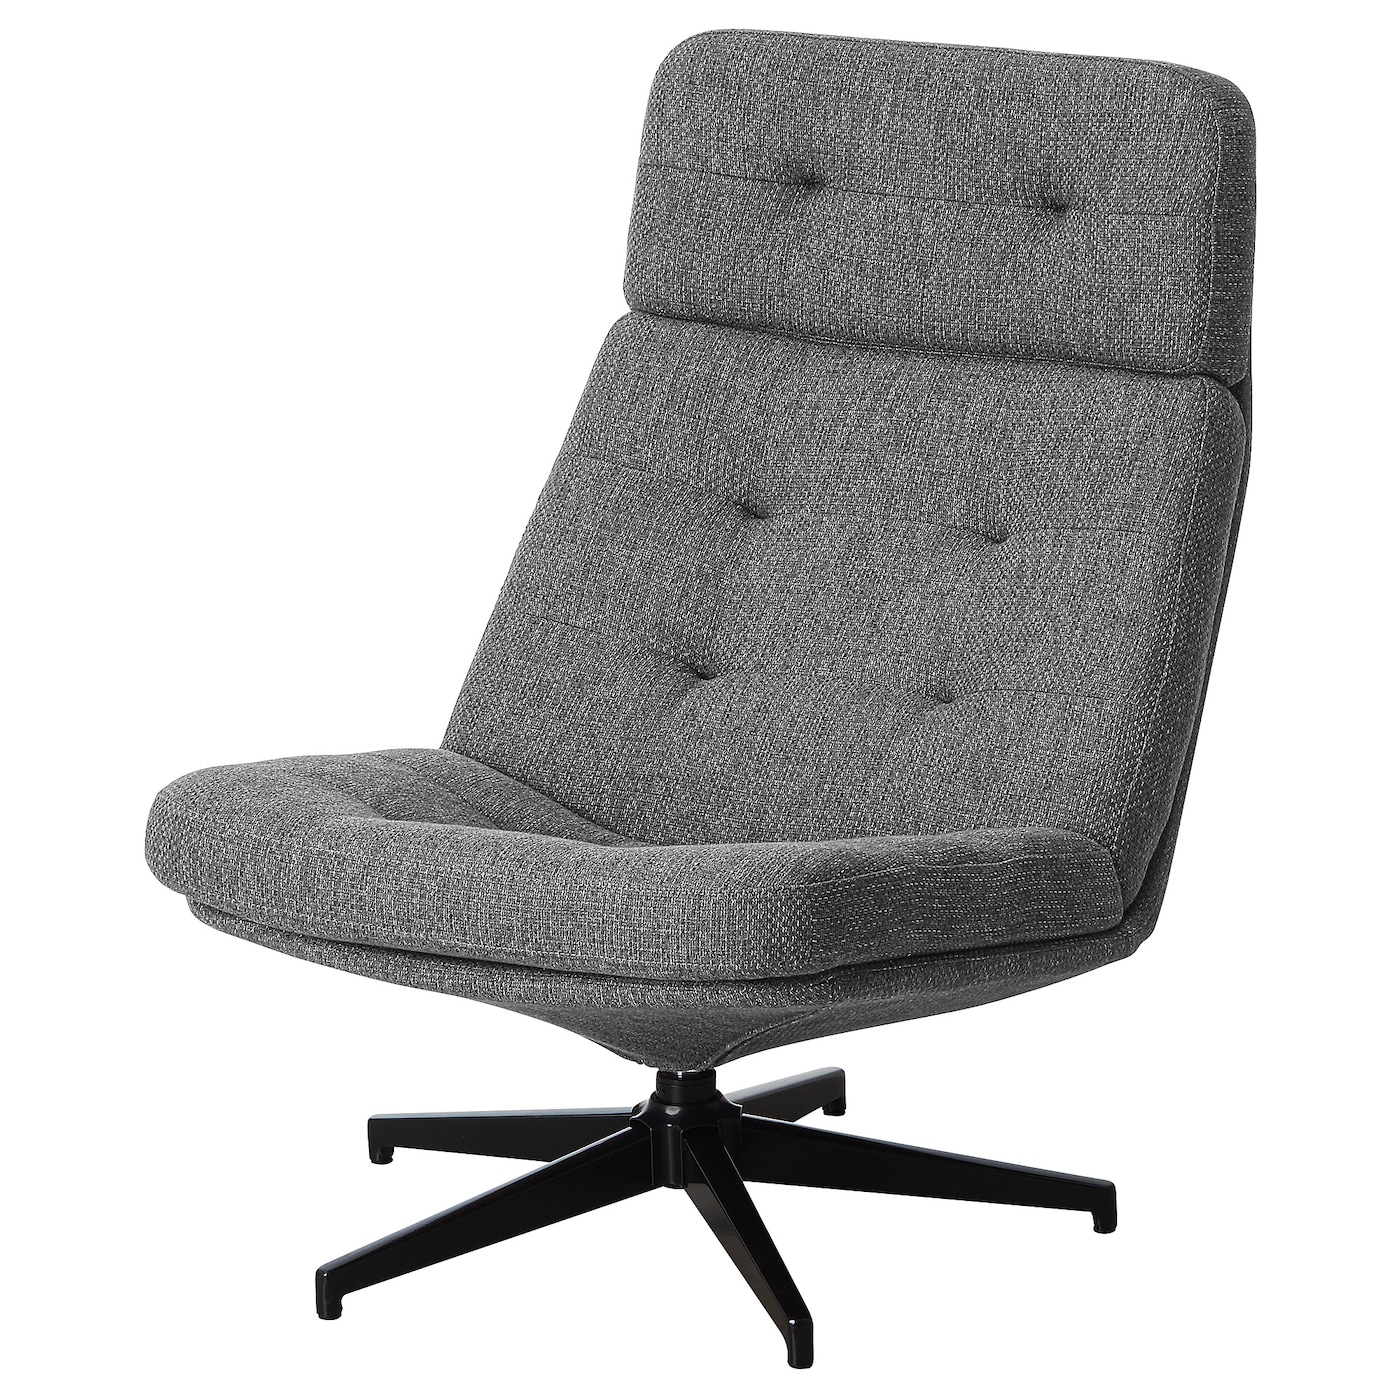 ХАВБЕРГ Вращающееся кресло, Лейде серый/черный HAVBERG IKEA вращающееся кресло раскладное